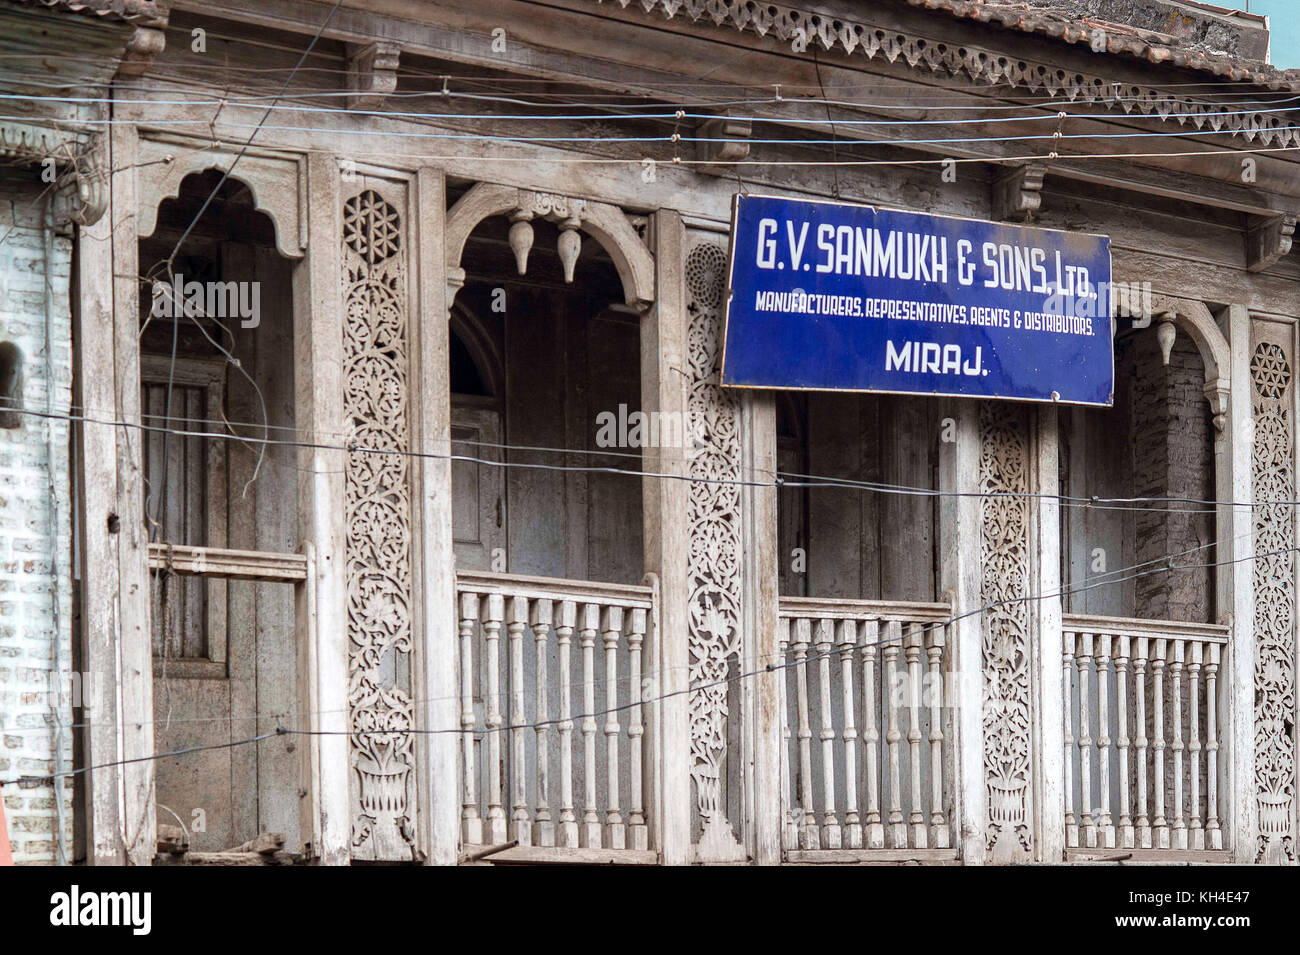 enamel sign board, Miraj, Maharashtra, India, Asia Stock Photo